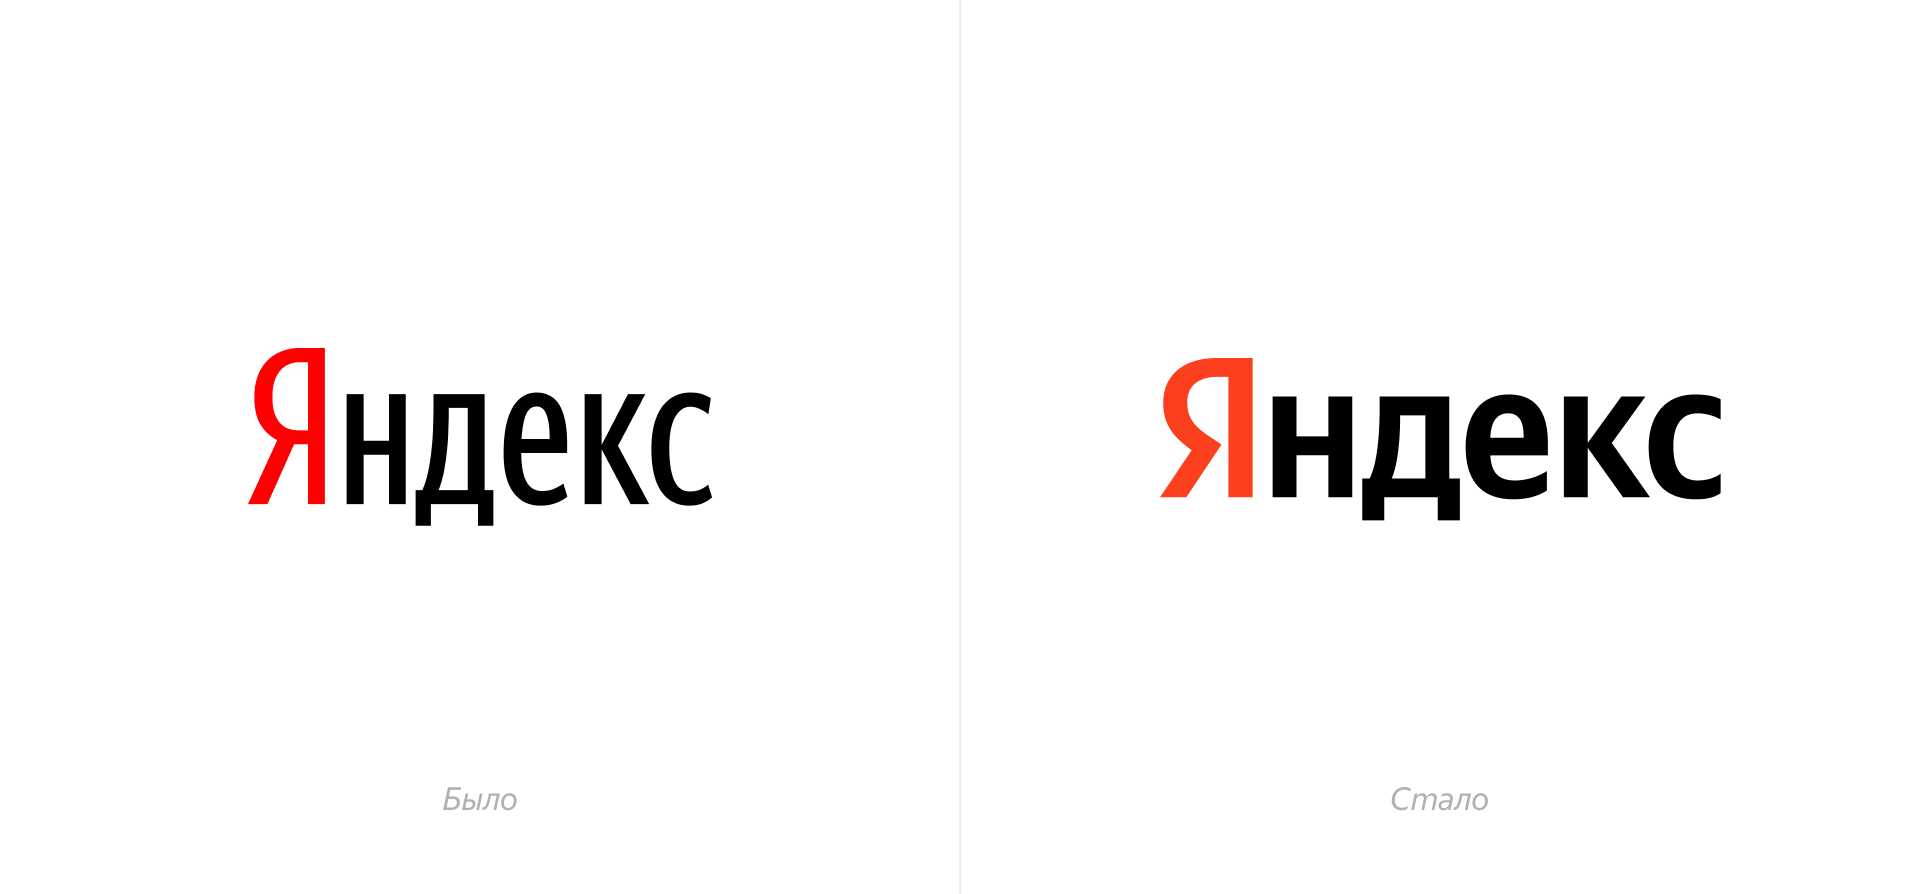 Яндекс представил большое обновление мобильного Браузера